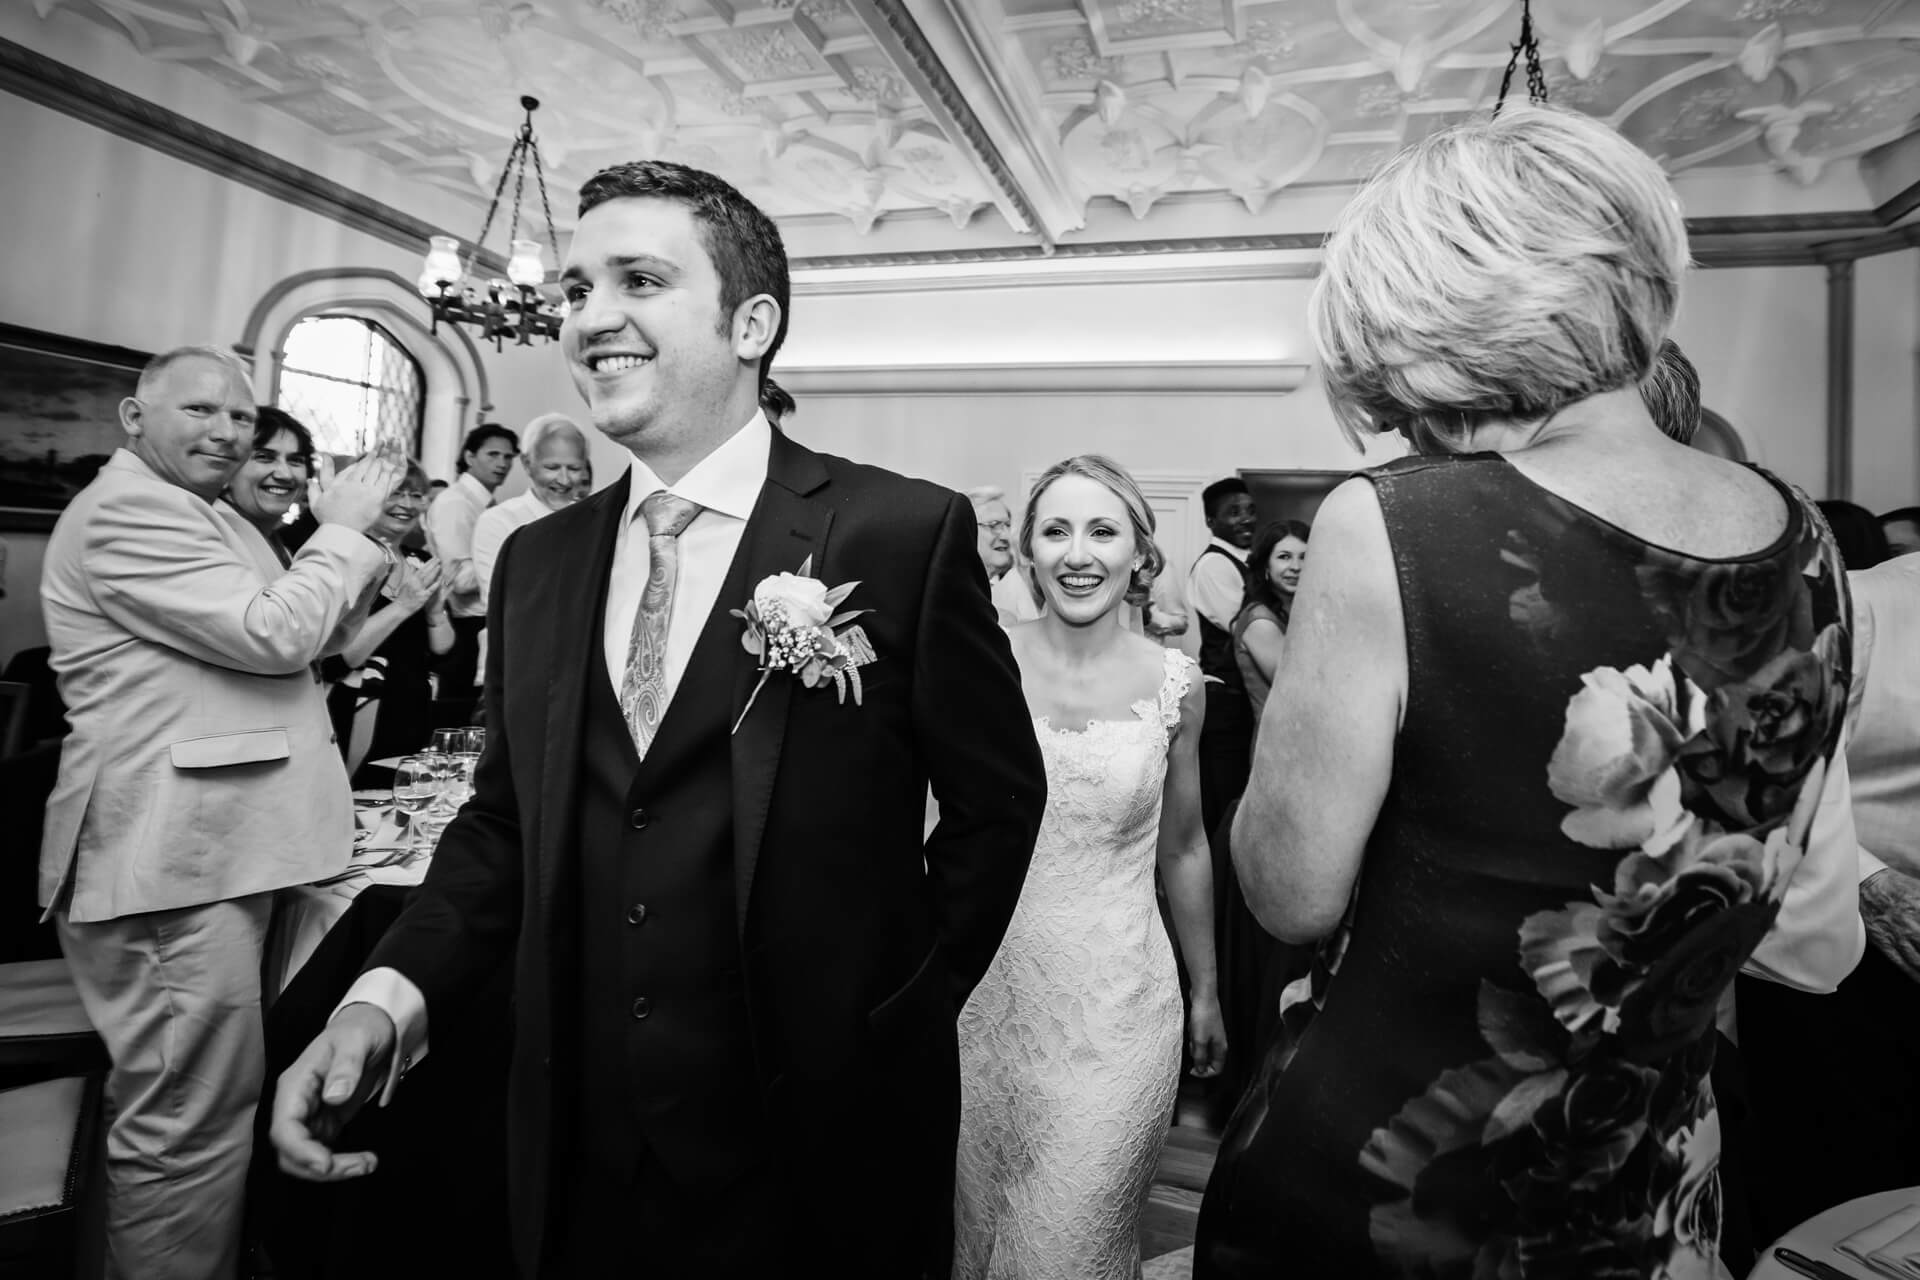 Denton Hall Wedding Photograpy - couple enter the reception room